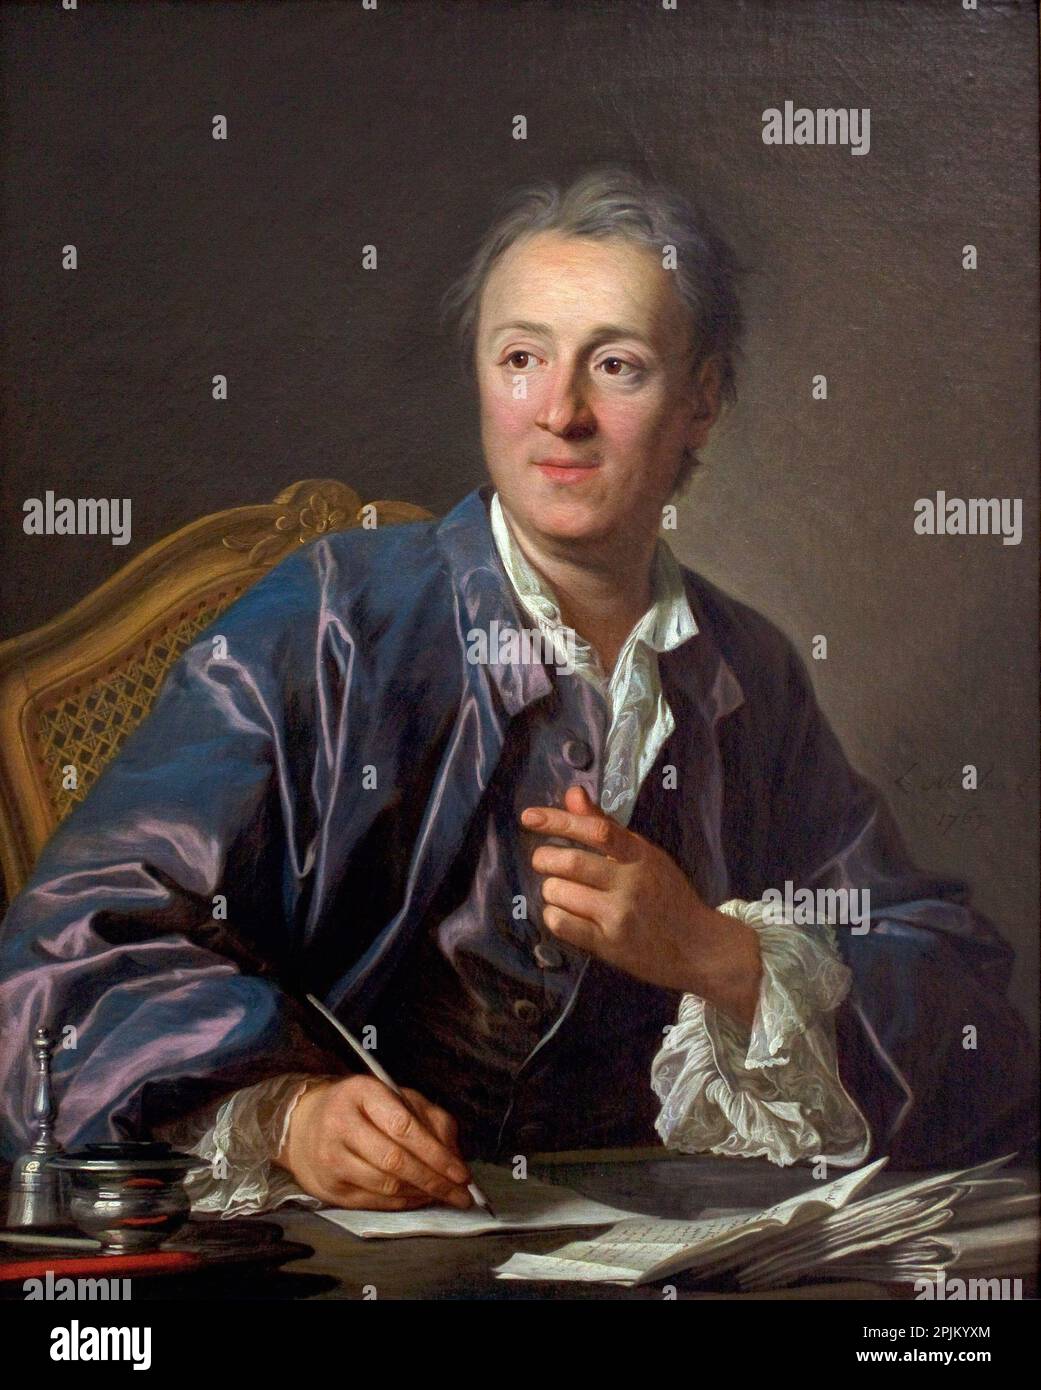 Denis Diderot, écrivain - Portrait de Denis Diderot (1713-1784), ecrivain, philosophie, encyclopédique francais, peinture de Louis Michel Van Loo (1707-1771) Huile sur toile, 1767 Musée du Louvre Banque D'Images